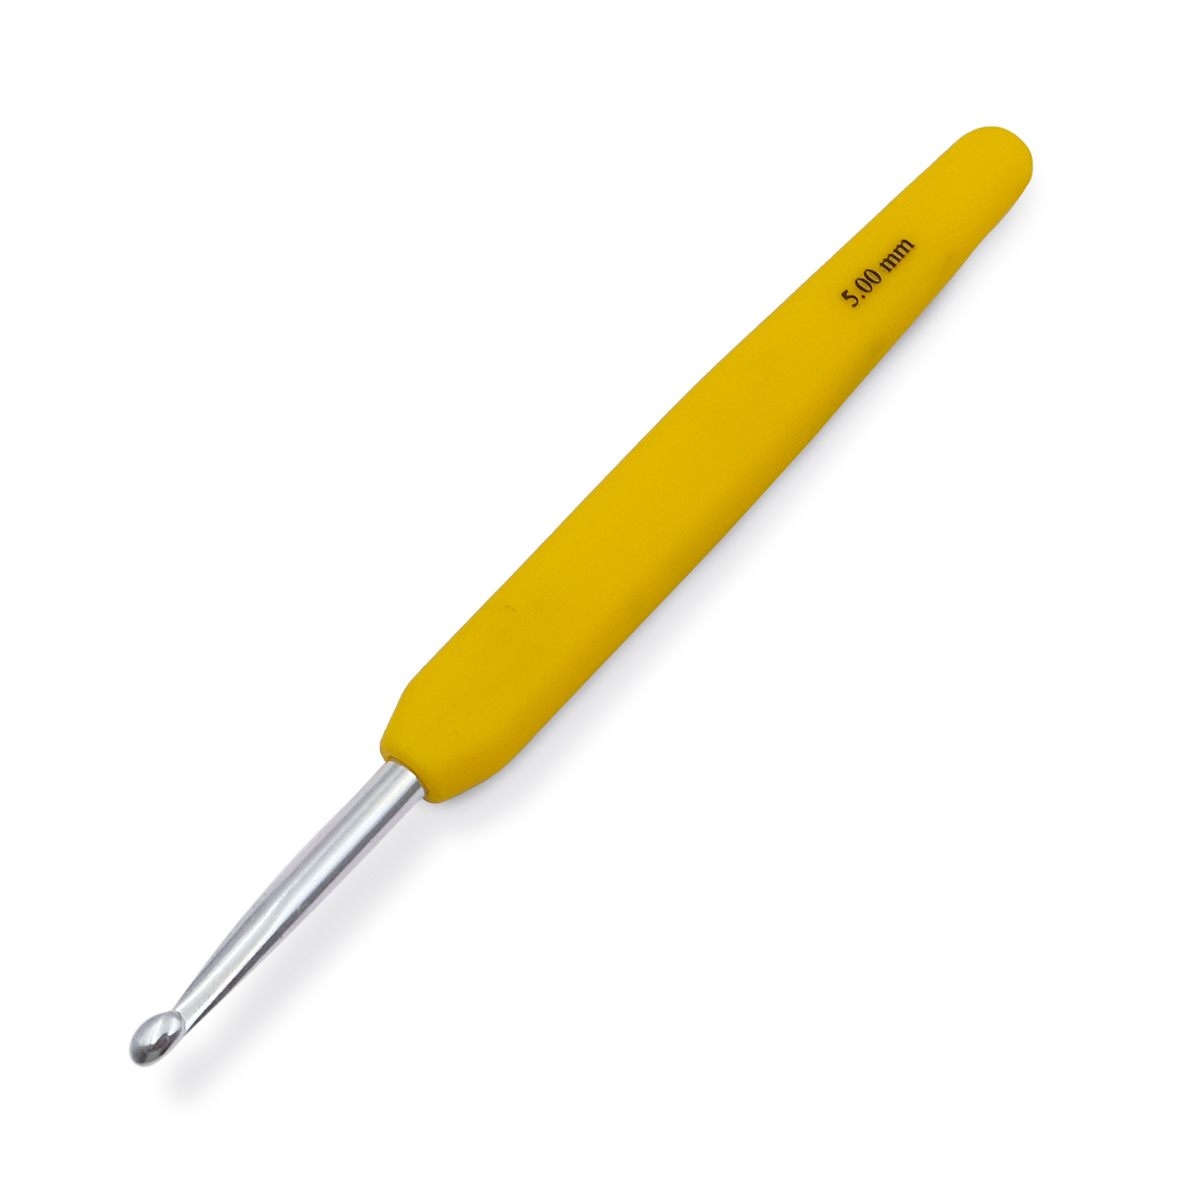 Крючок для вязания с эргономичной ручкой Waves 5мм, алюминий, серебро/ракитник, KnitPro